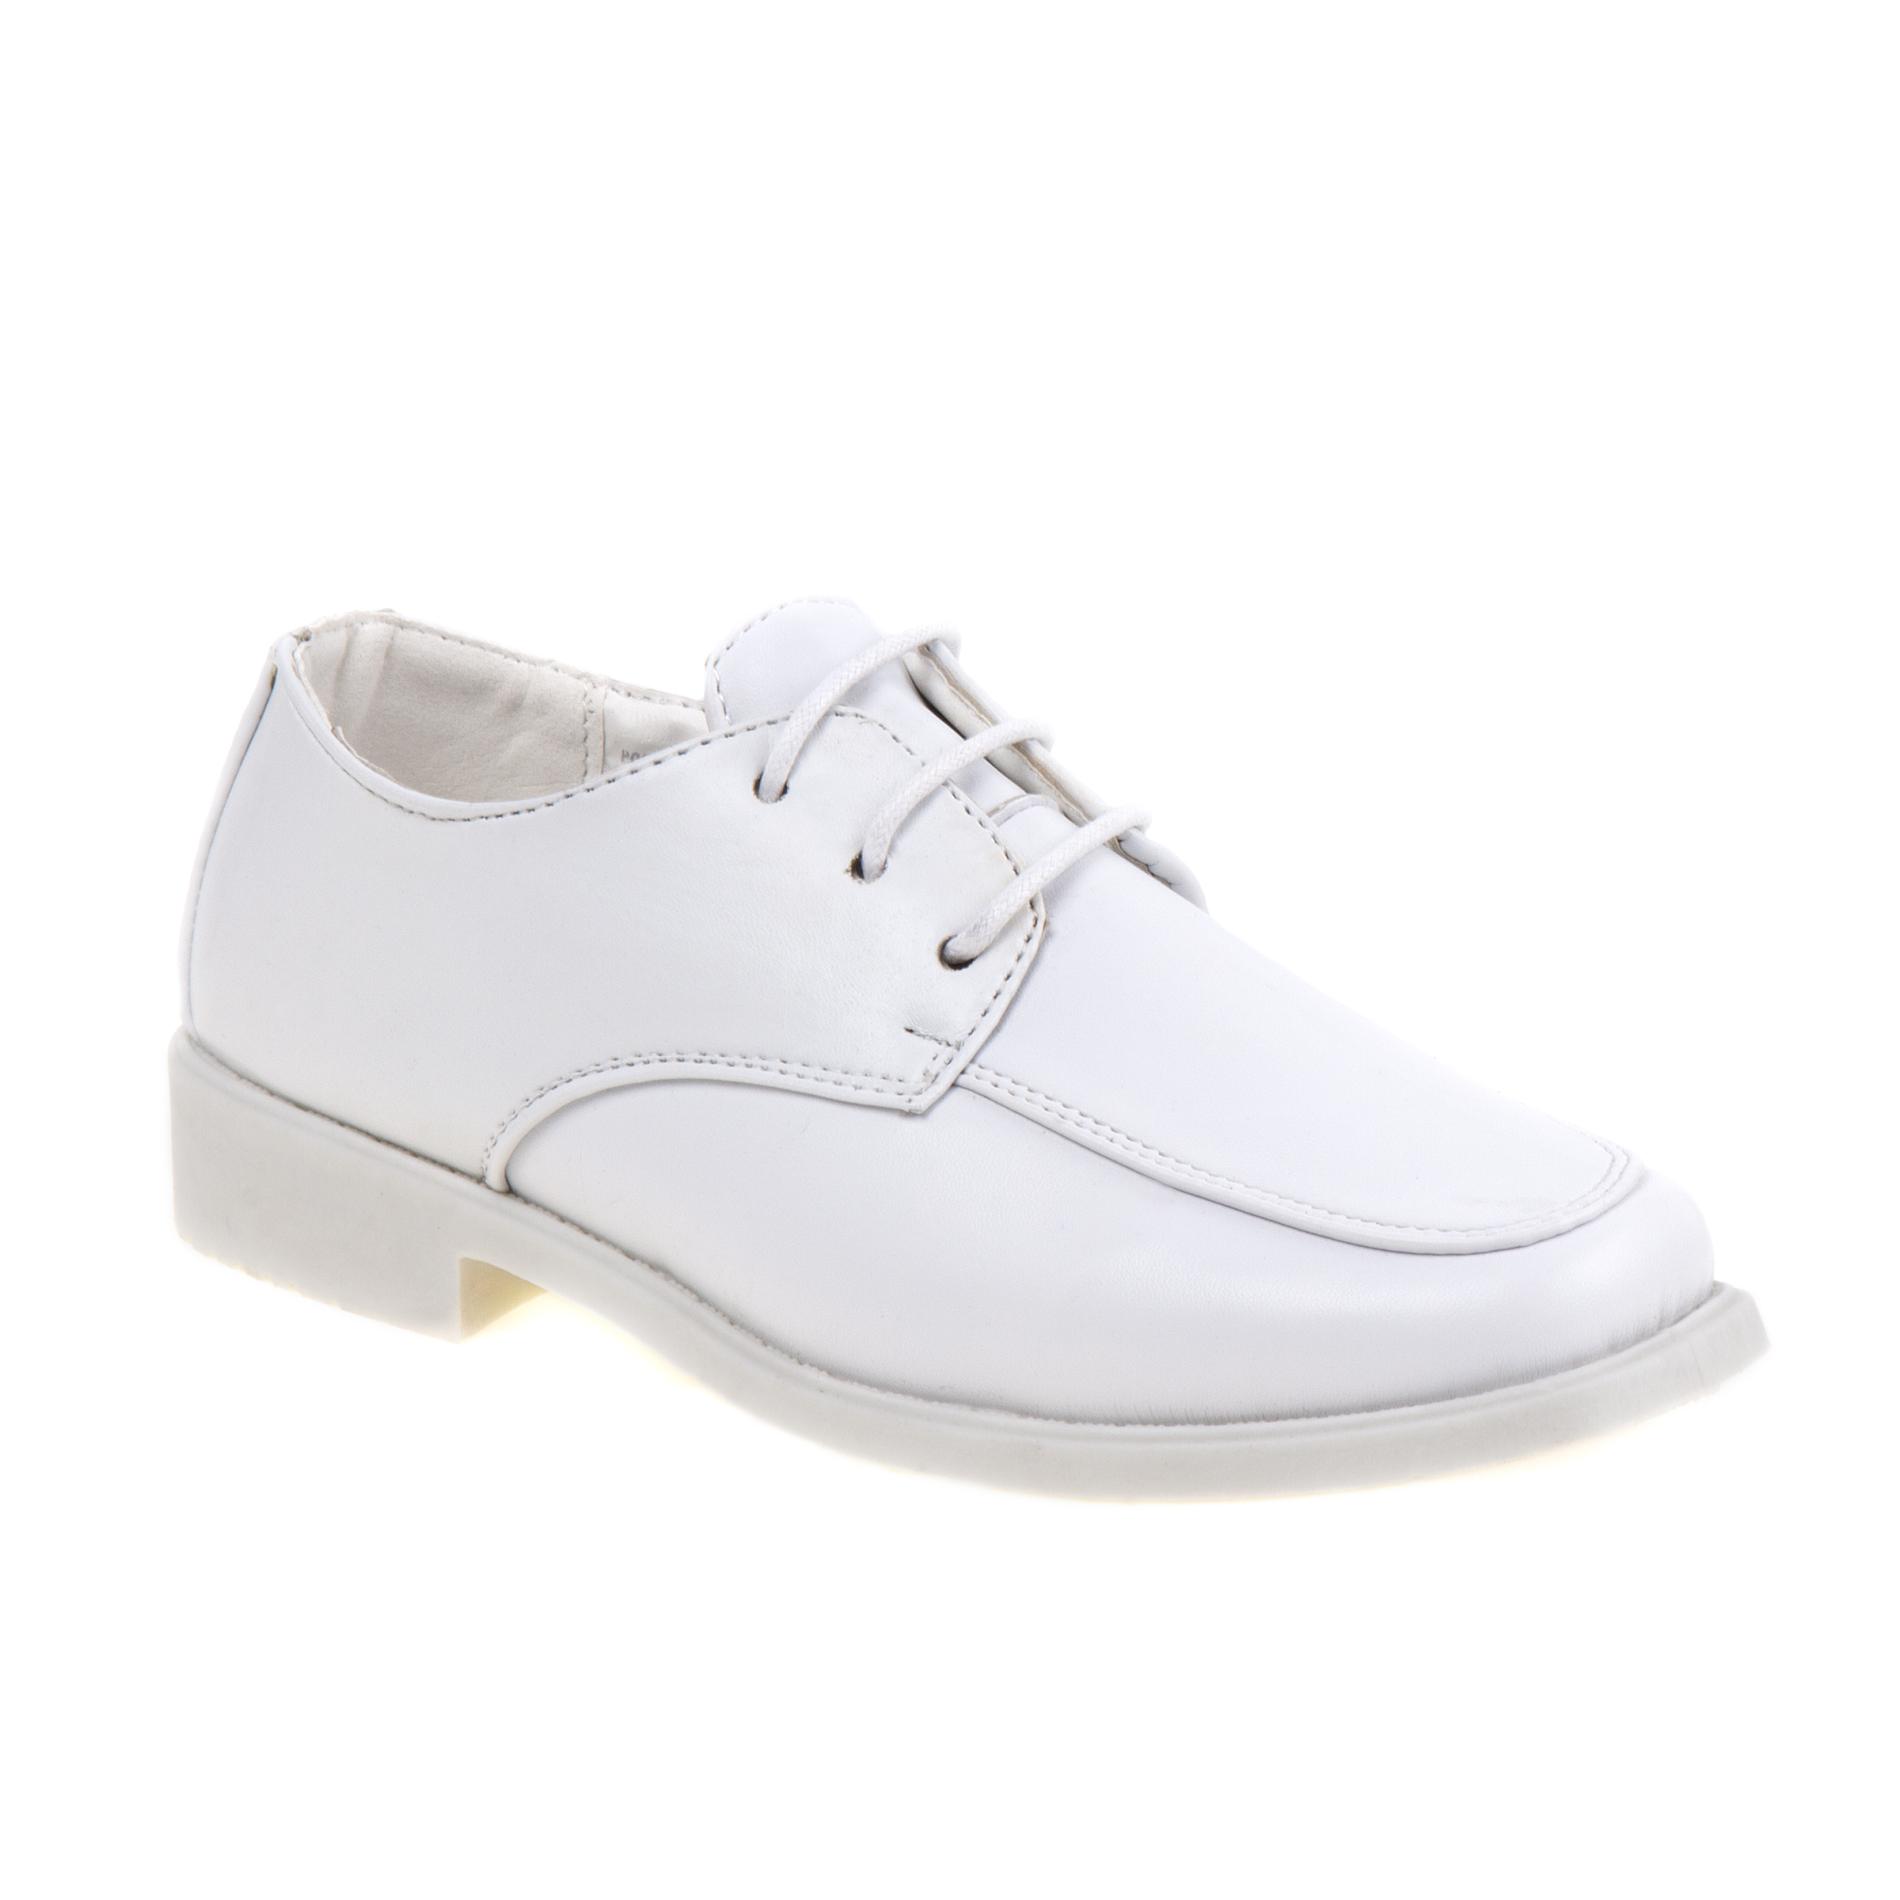 Josmo Boy's White Oxford Dress Shoe